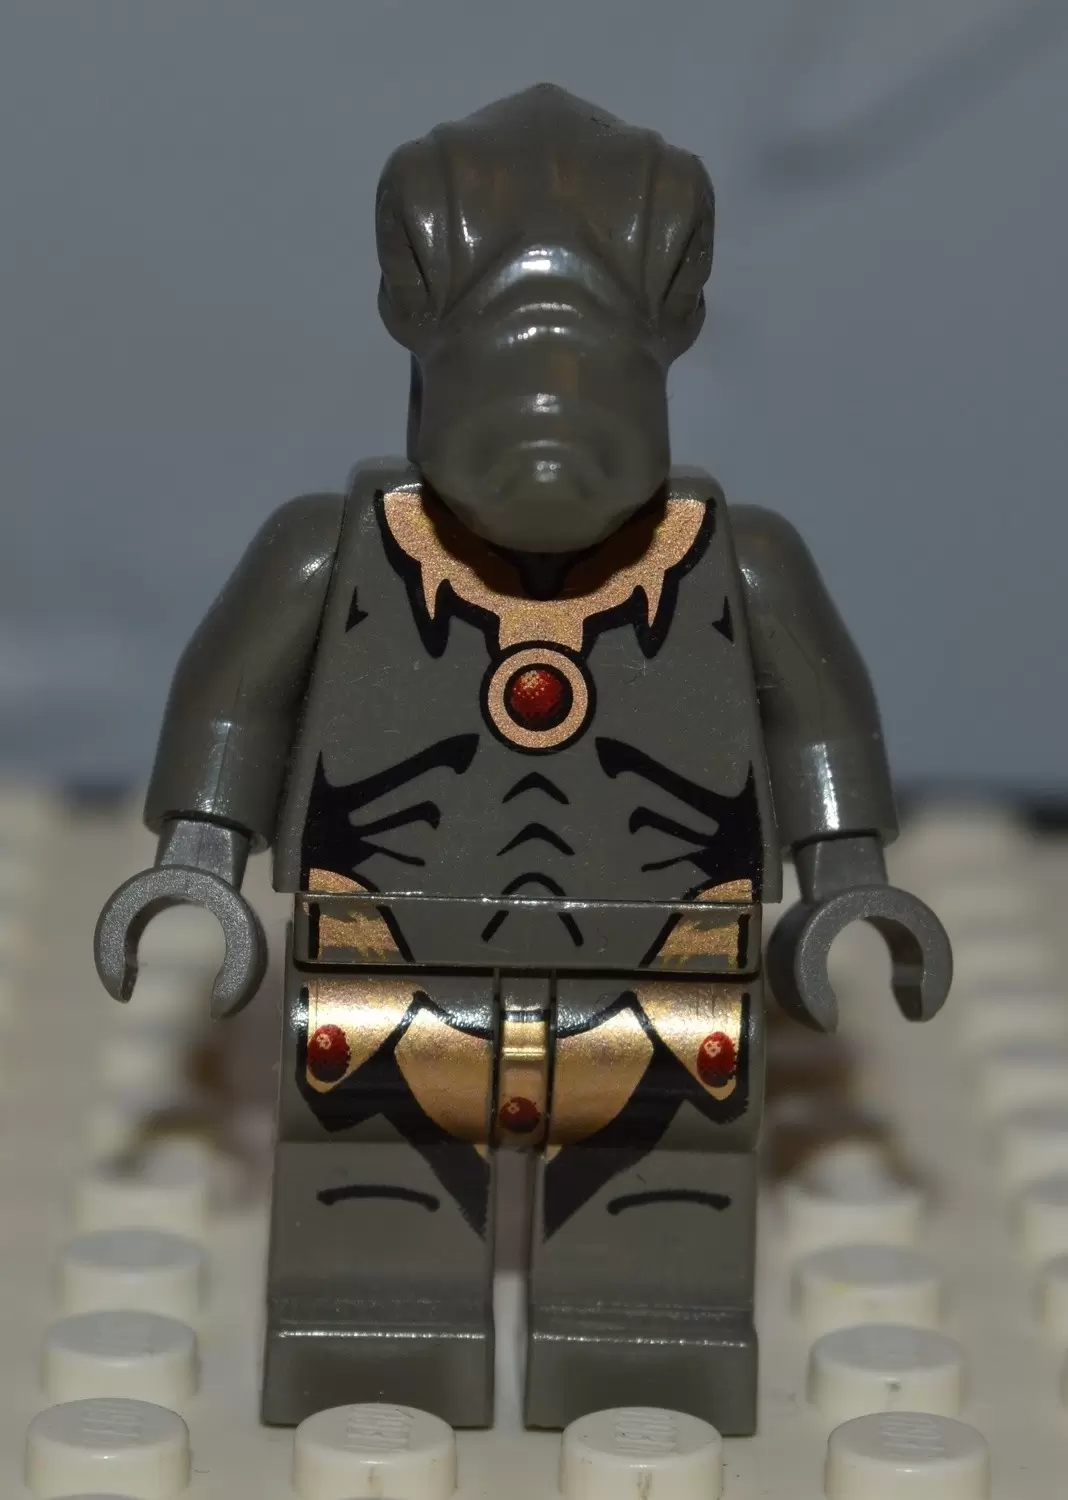 Lego Mini Figure Star Wars Figure Geonosian Soldier from 4478 